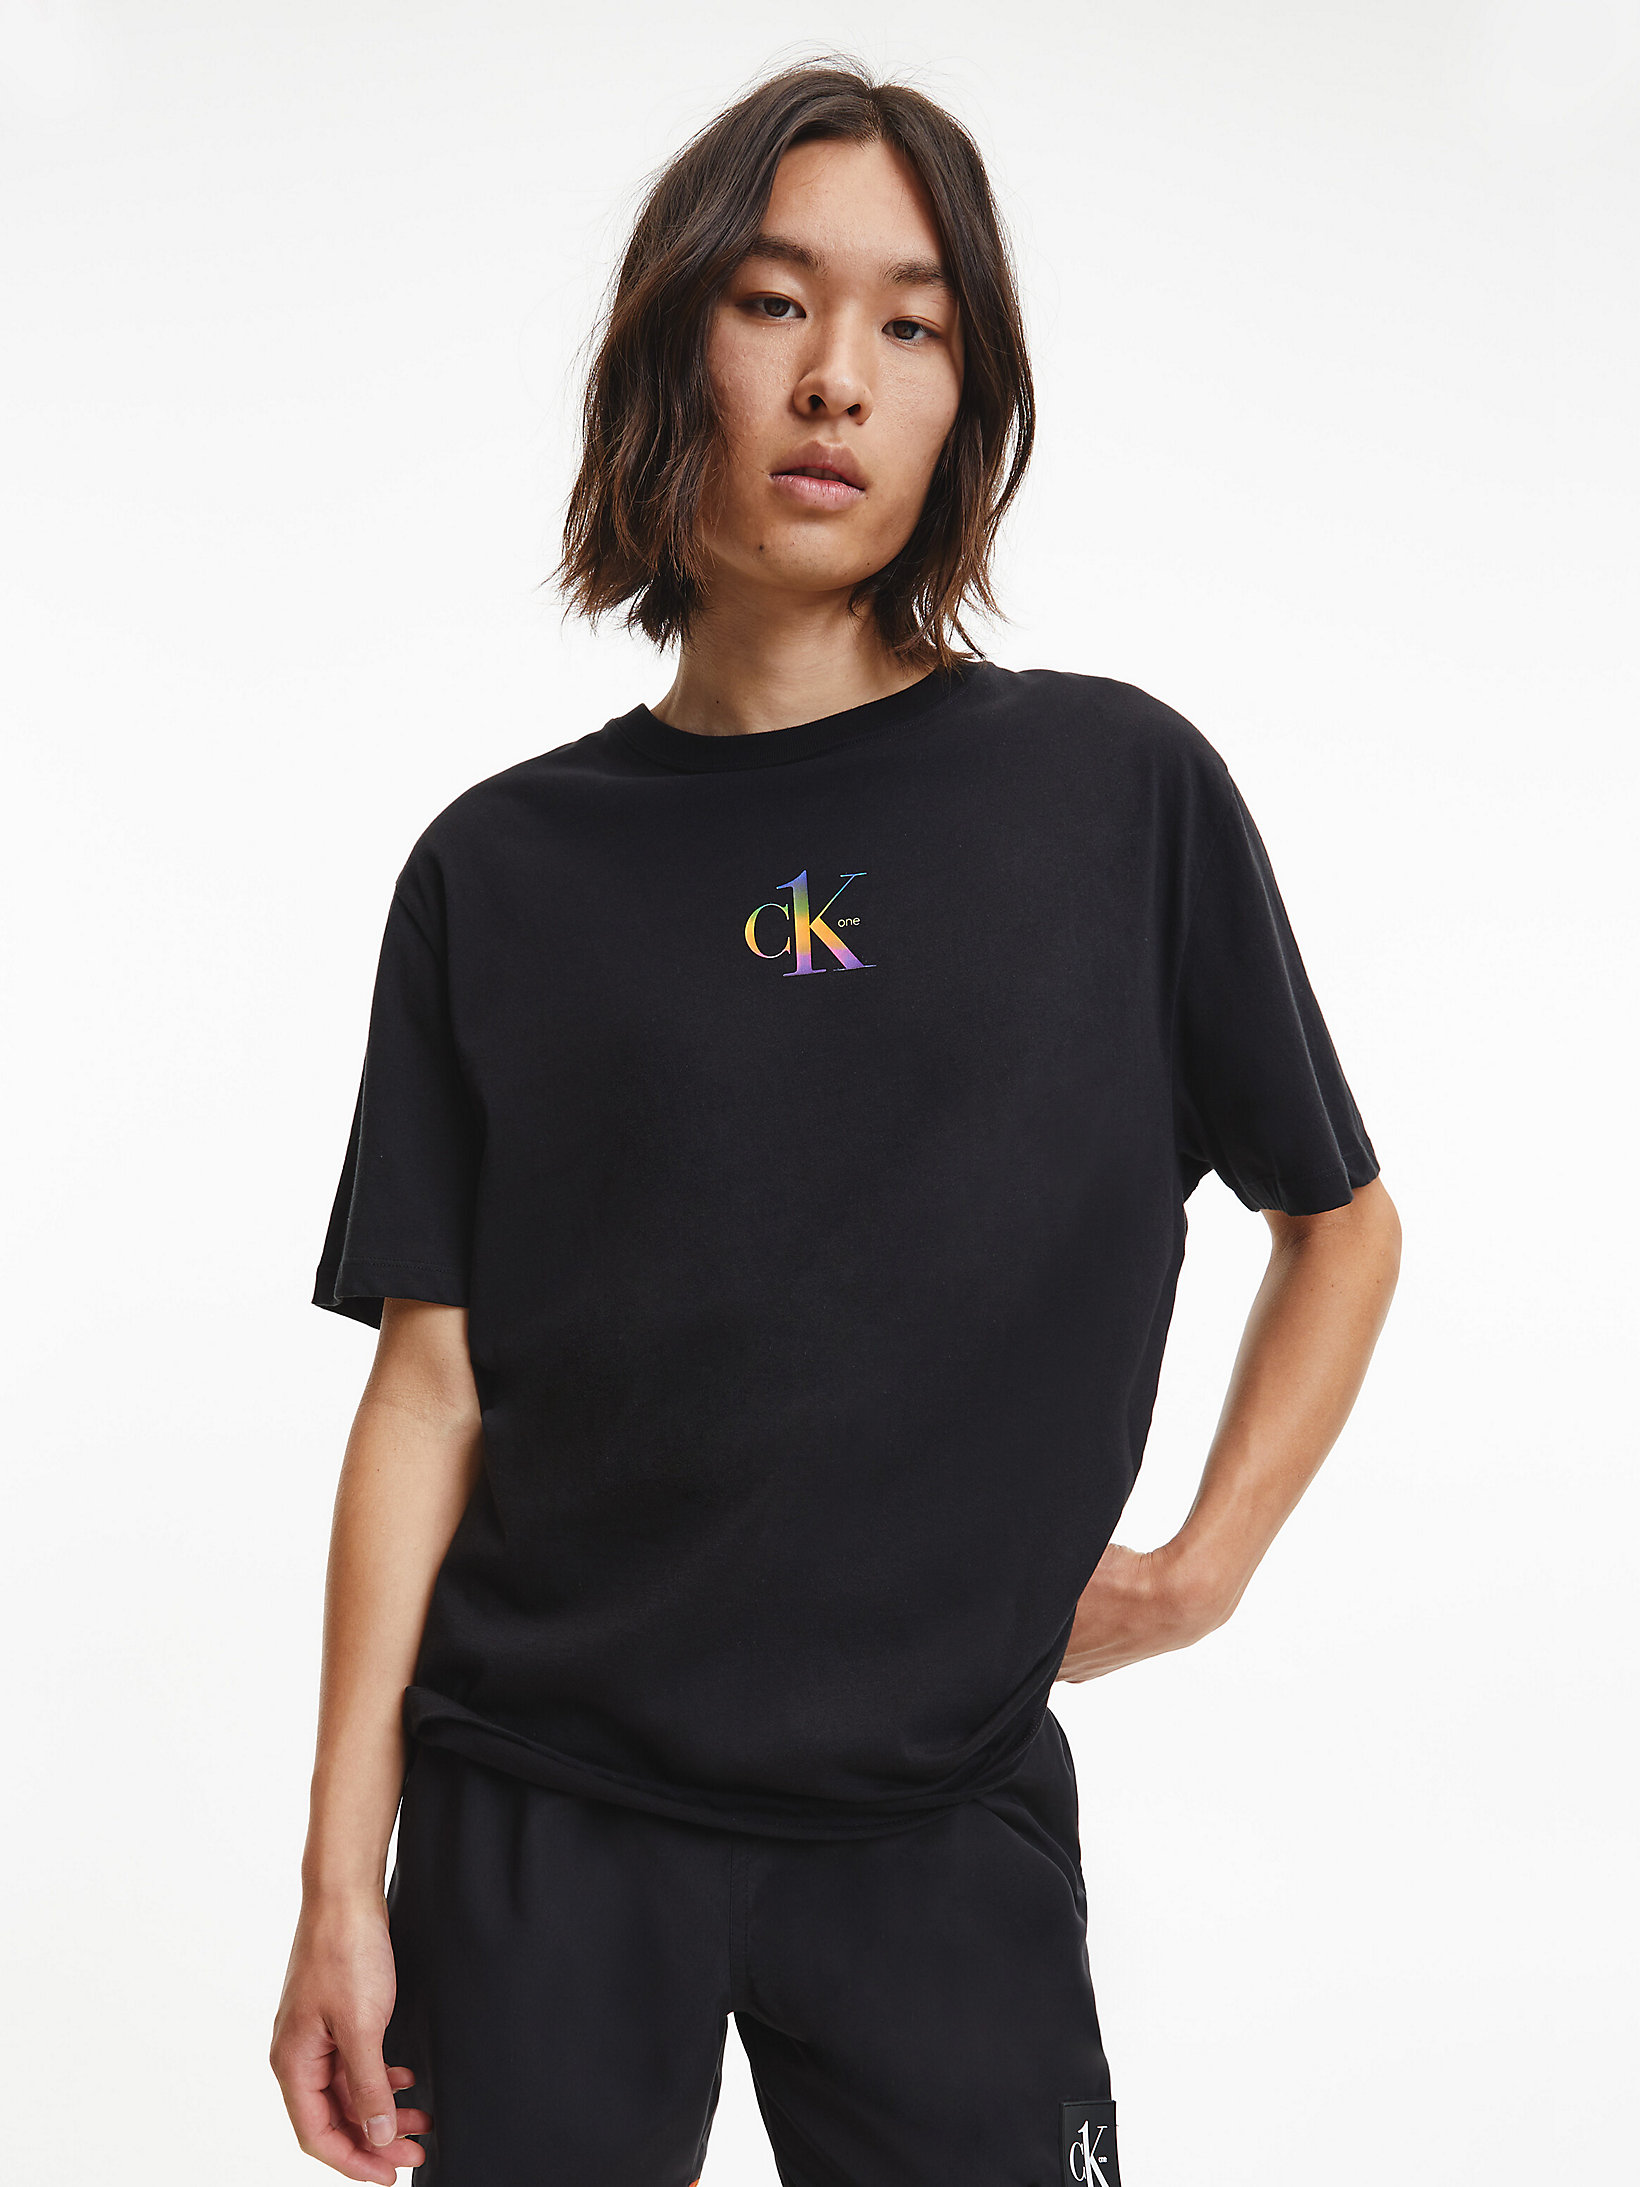 Pvh Black Unisex Beach T-Shirt - Pride undefined unisex Calvin Klein